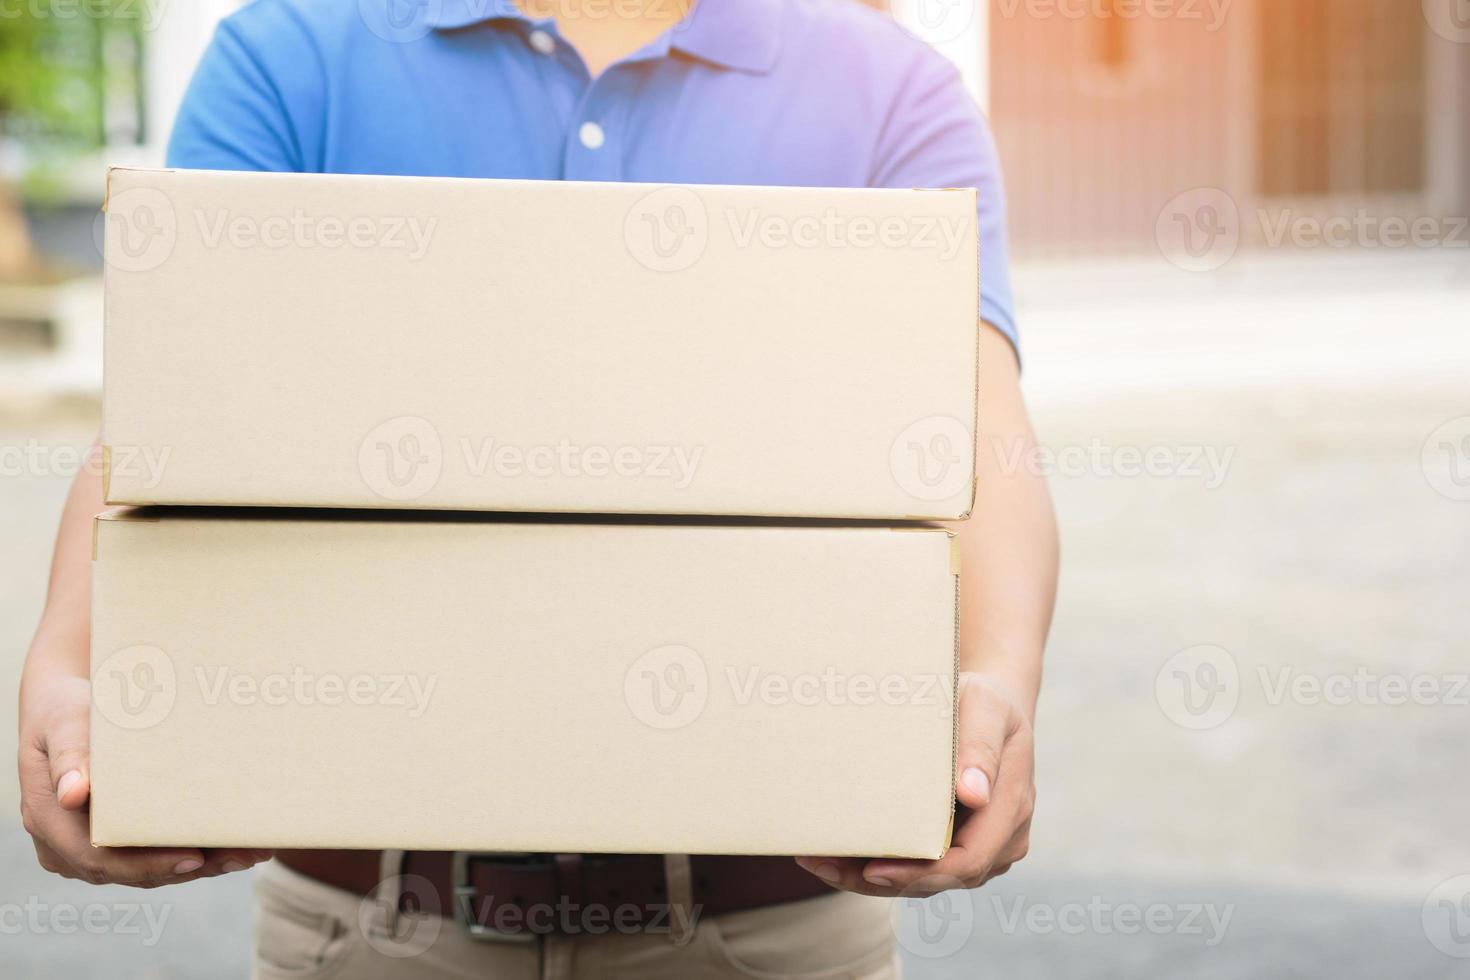 pakketbezorger van een pakket via een dienst naar huis sturen. verzend hand indiening klant die een levering van dozen van bezorger accepteert. foto